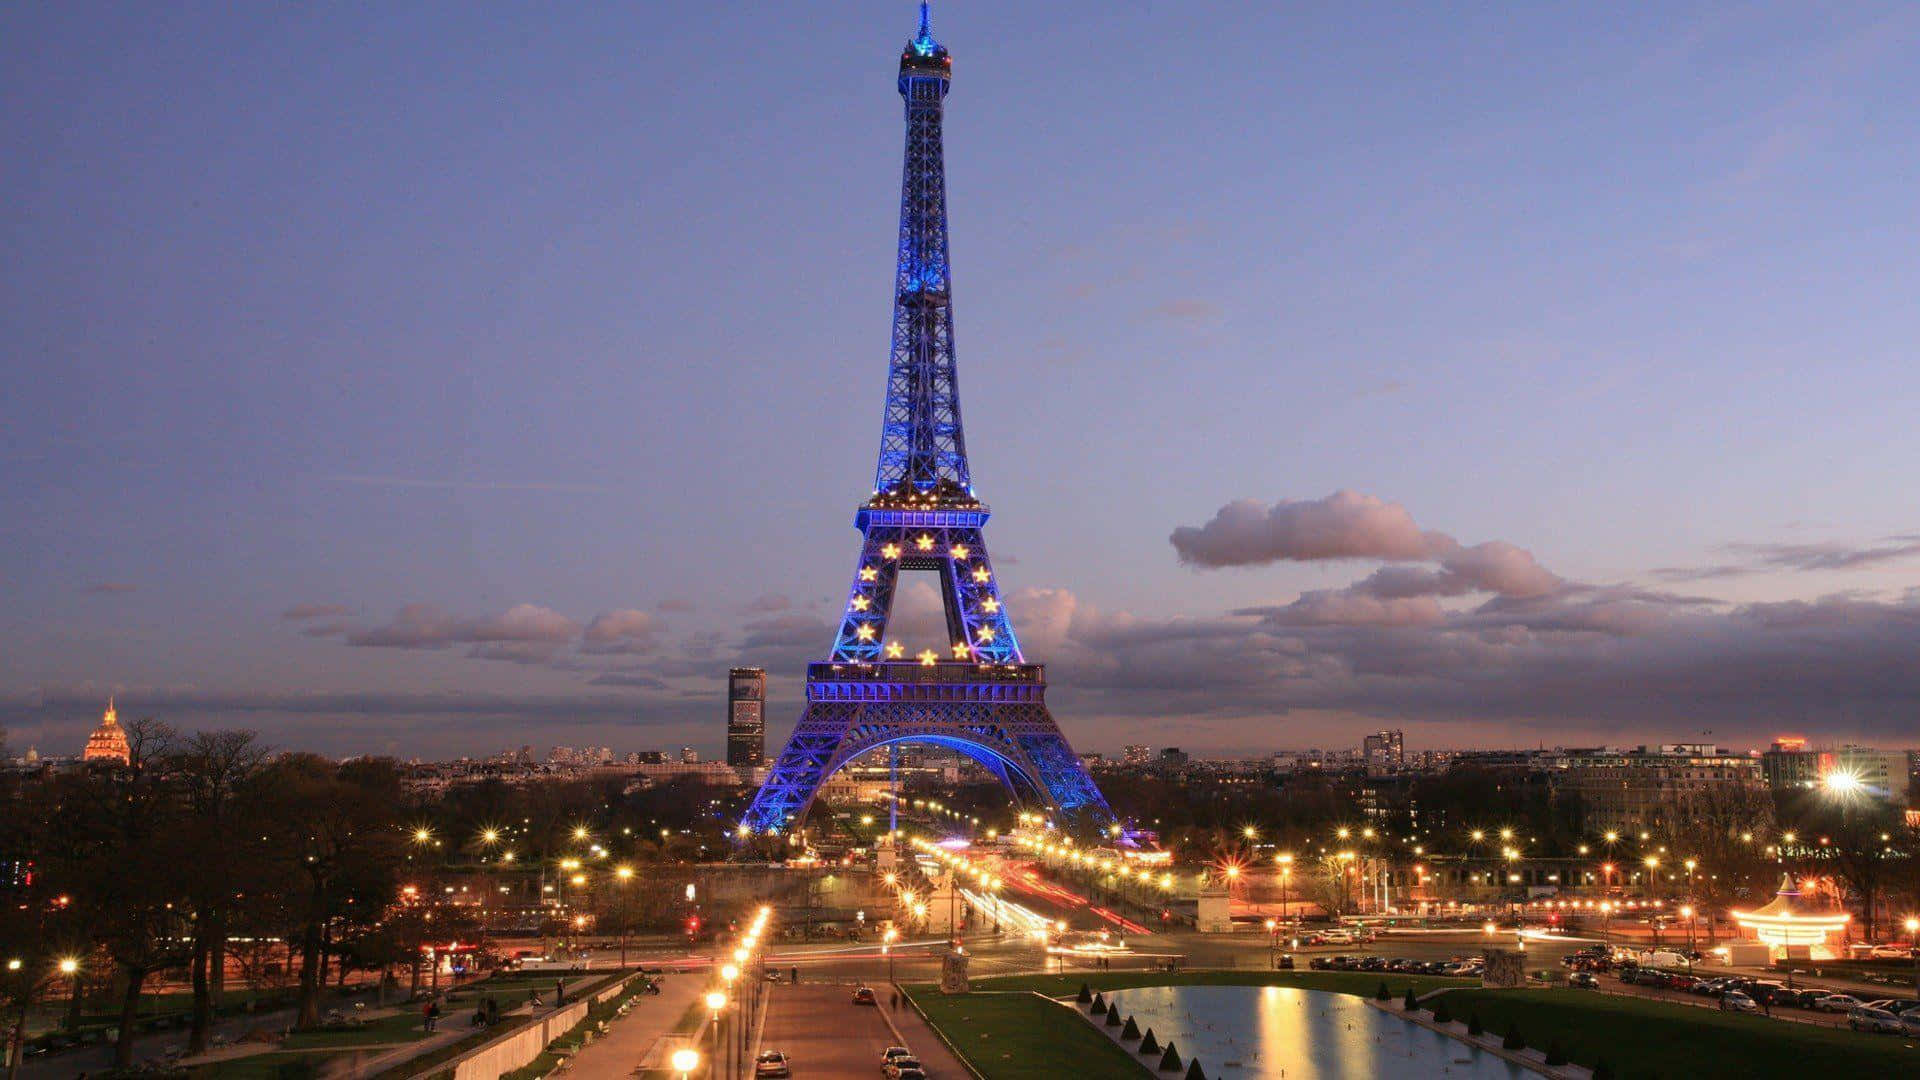 Densmukke Eiffeltårn Skinner Fra Lang Afstand I Lysets By.